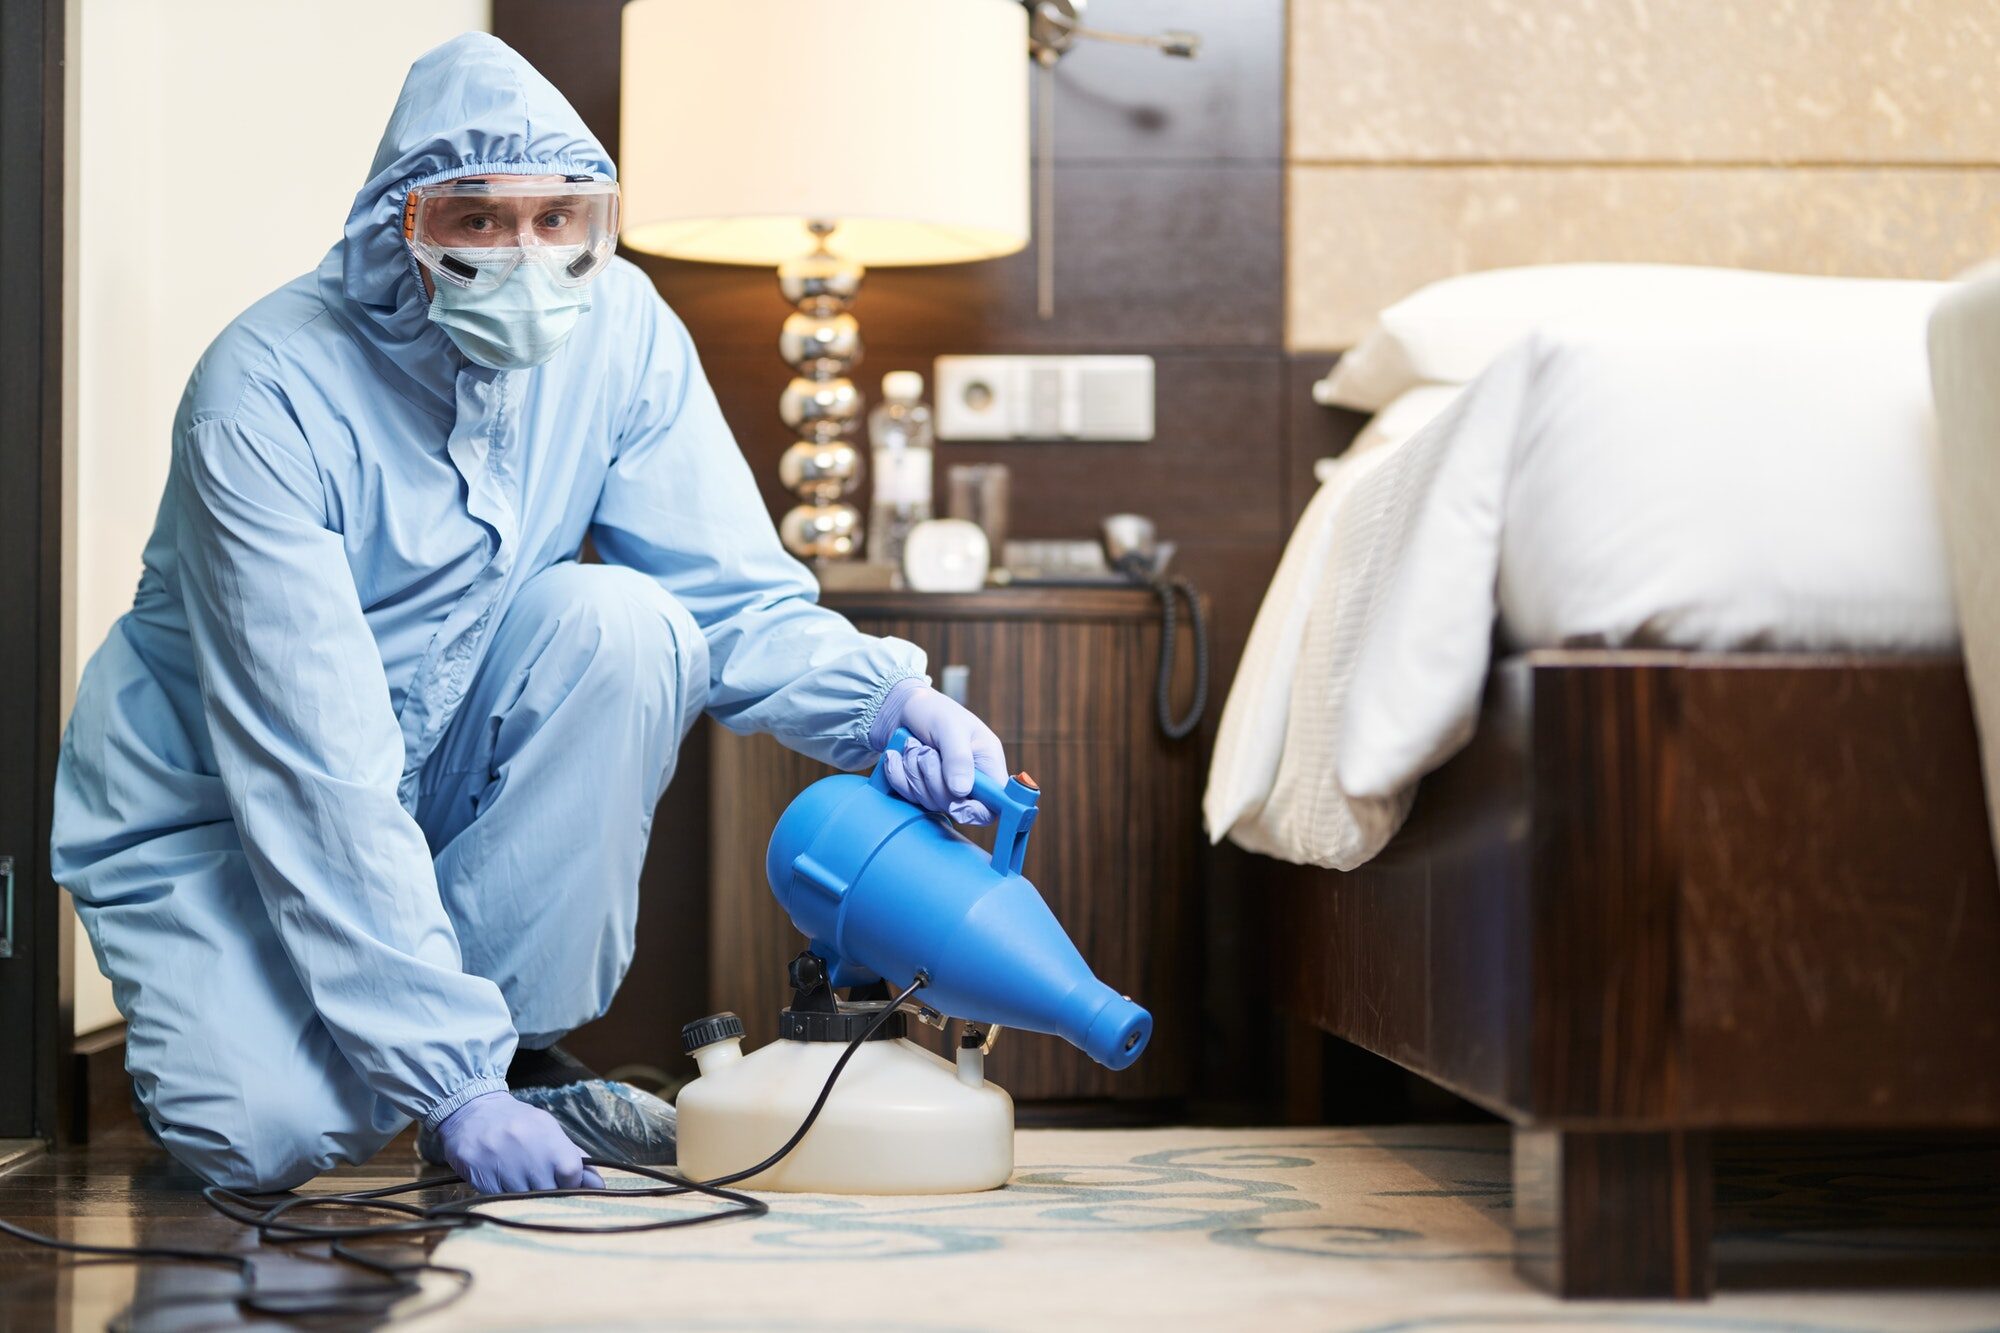 Worker in biohazard suit and mask disinfecting bedroom